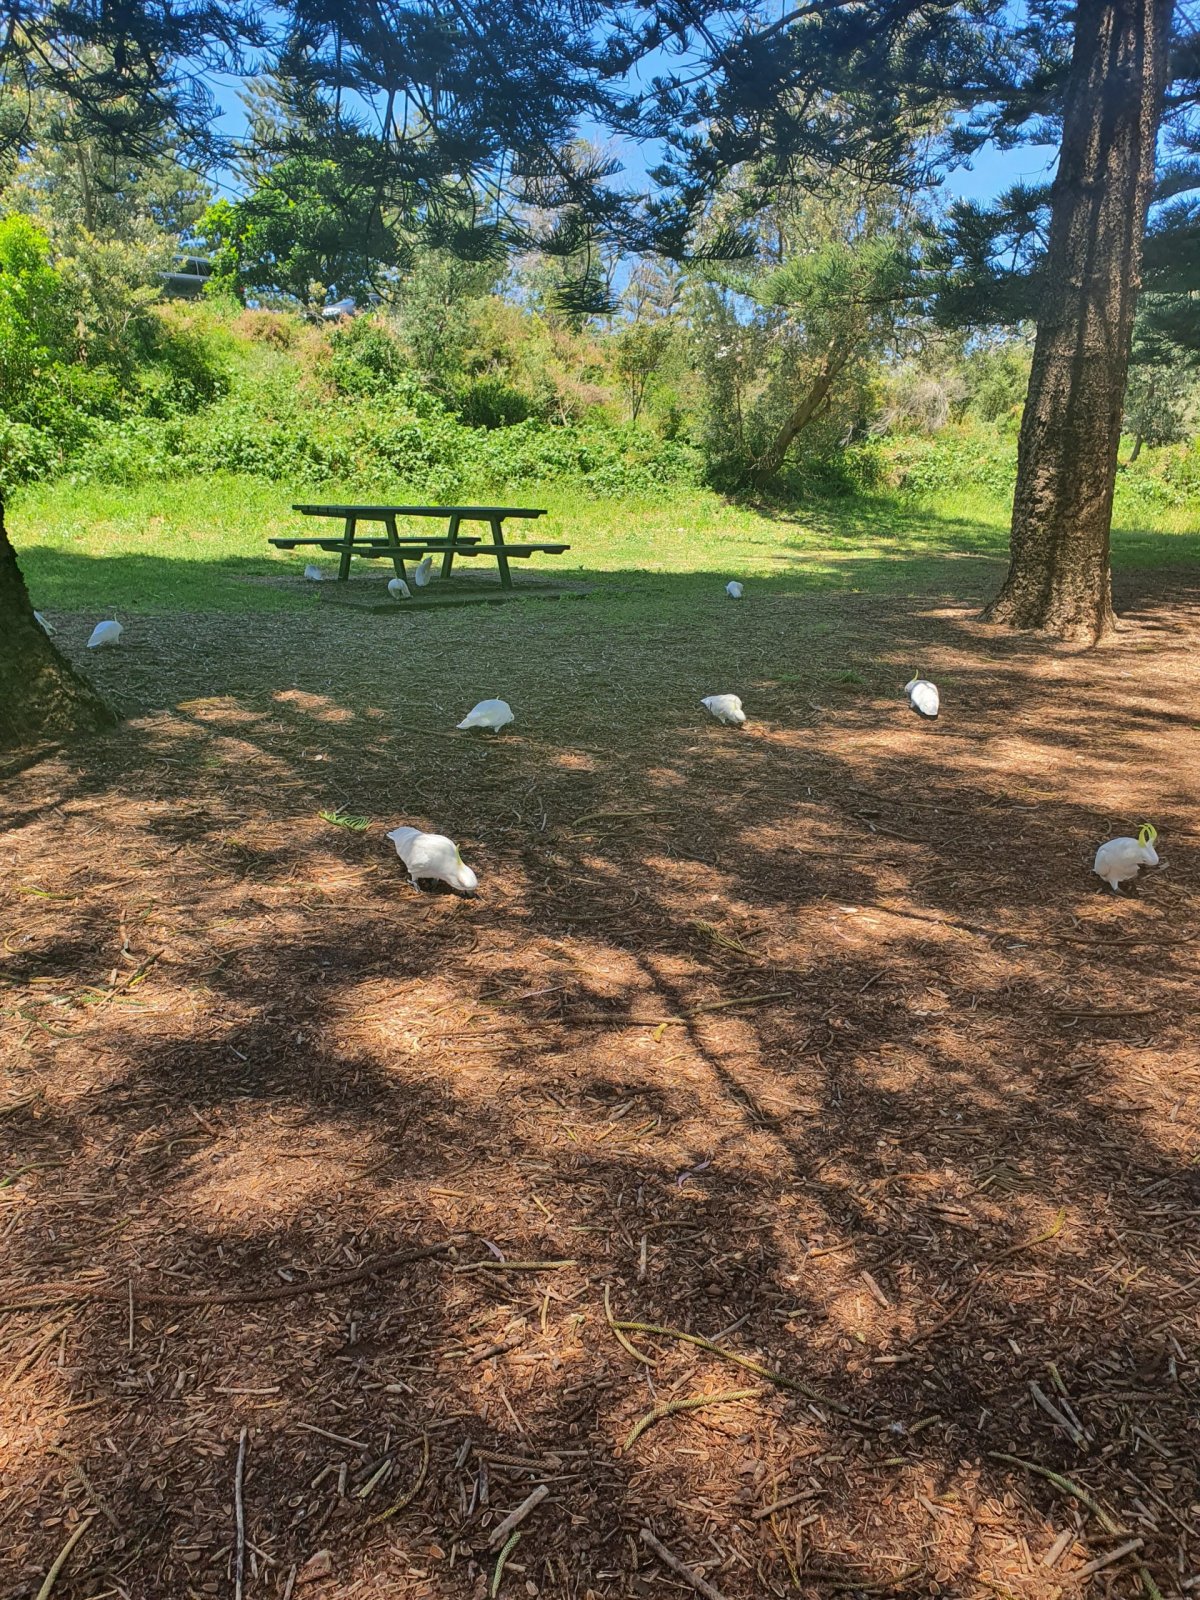 V parku jsou všude papoušci.